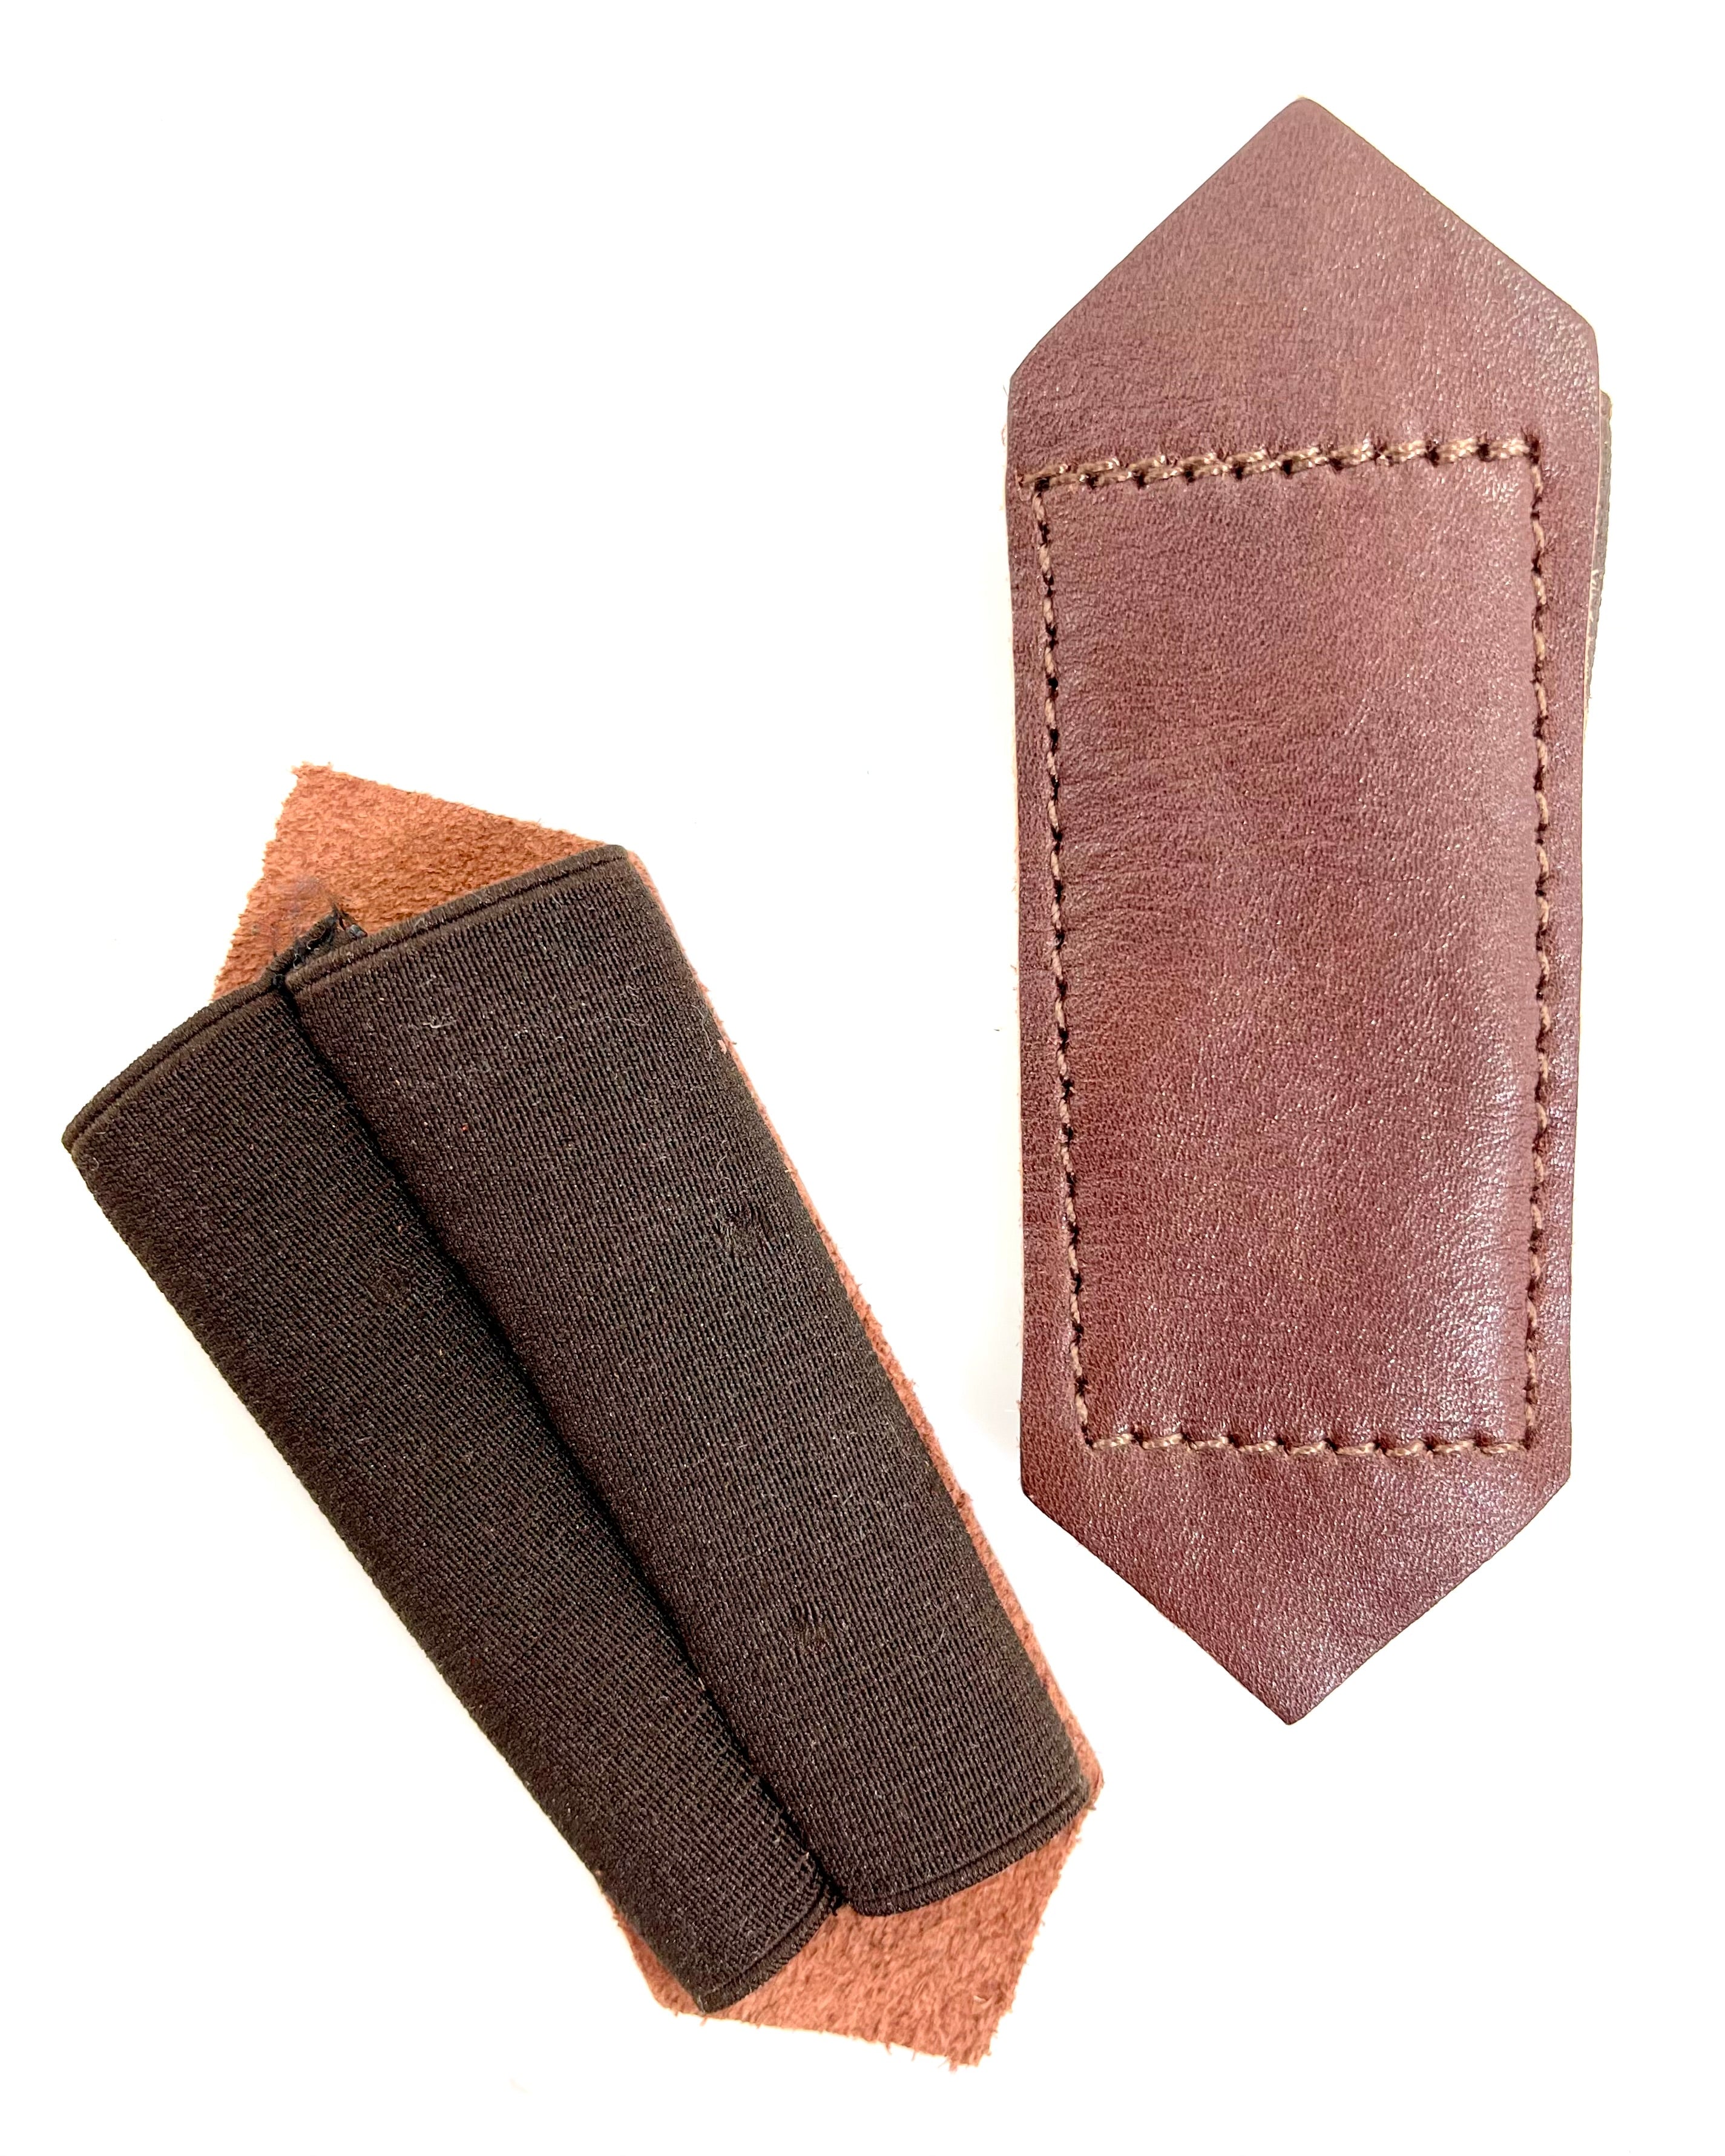 Cubiertas de hebilla de correa de nailon/cuero marrón